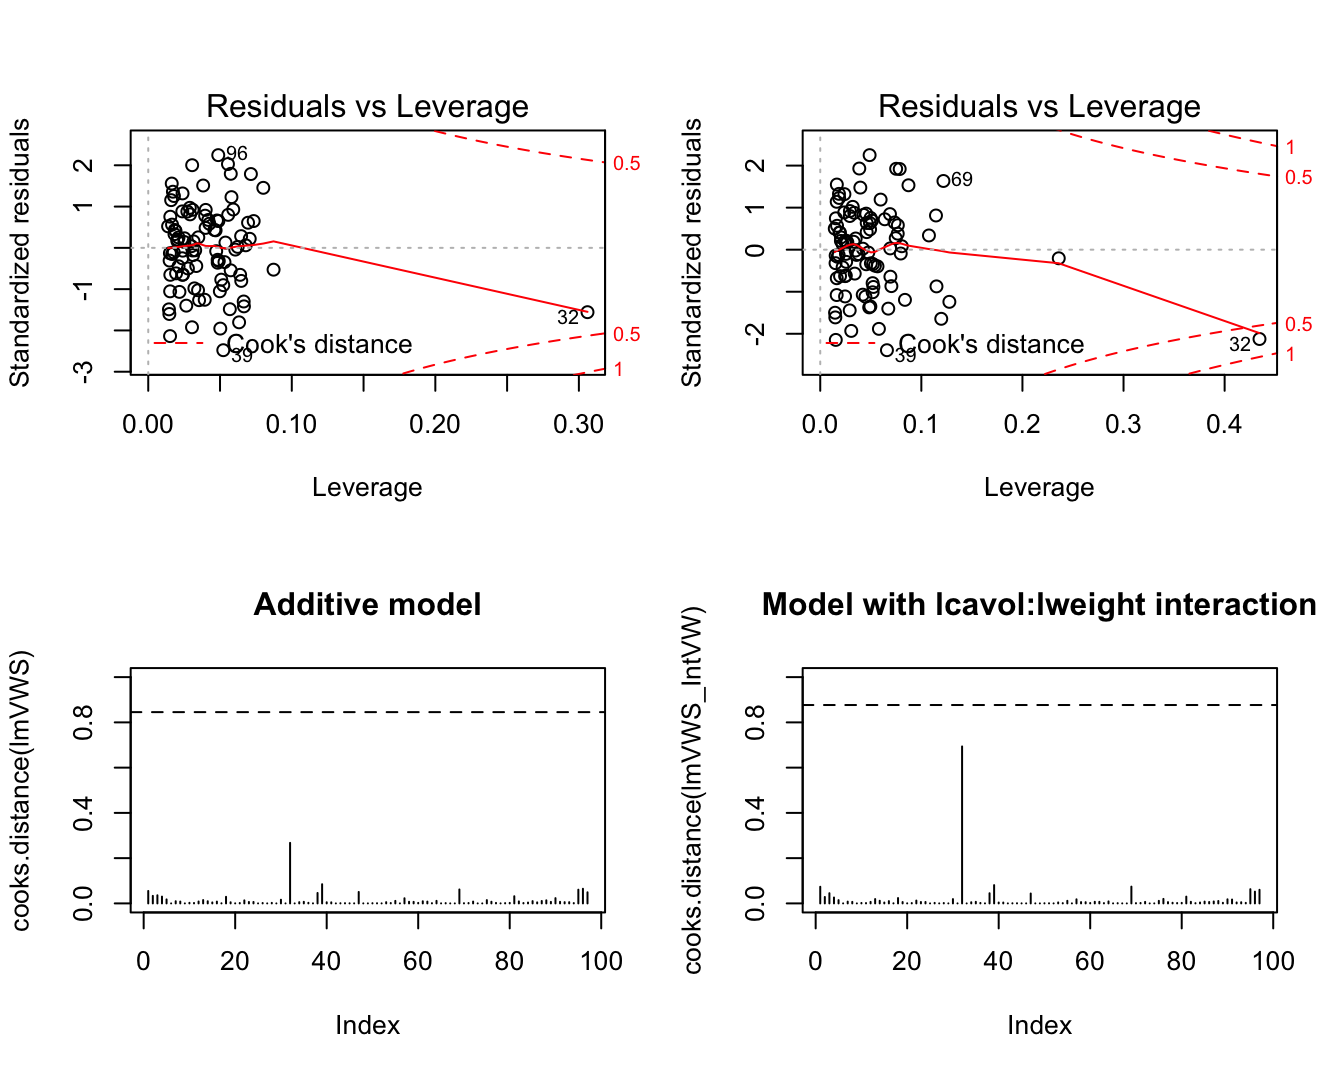 Evaluatie van de invloed van individuele observaties op het additieve model (links) en het model met de lcavol:lweight interactie (rechts).